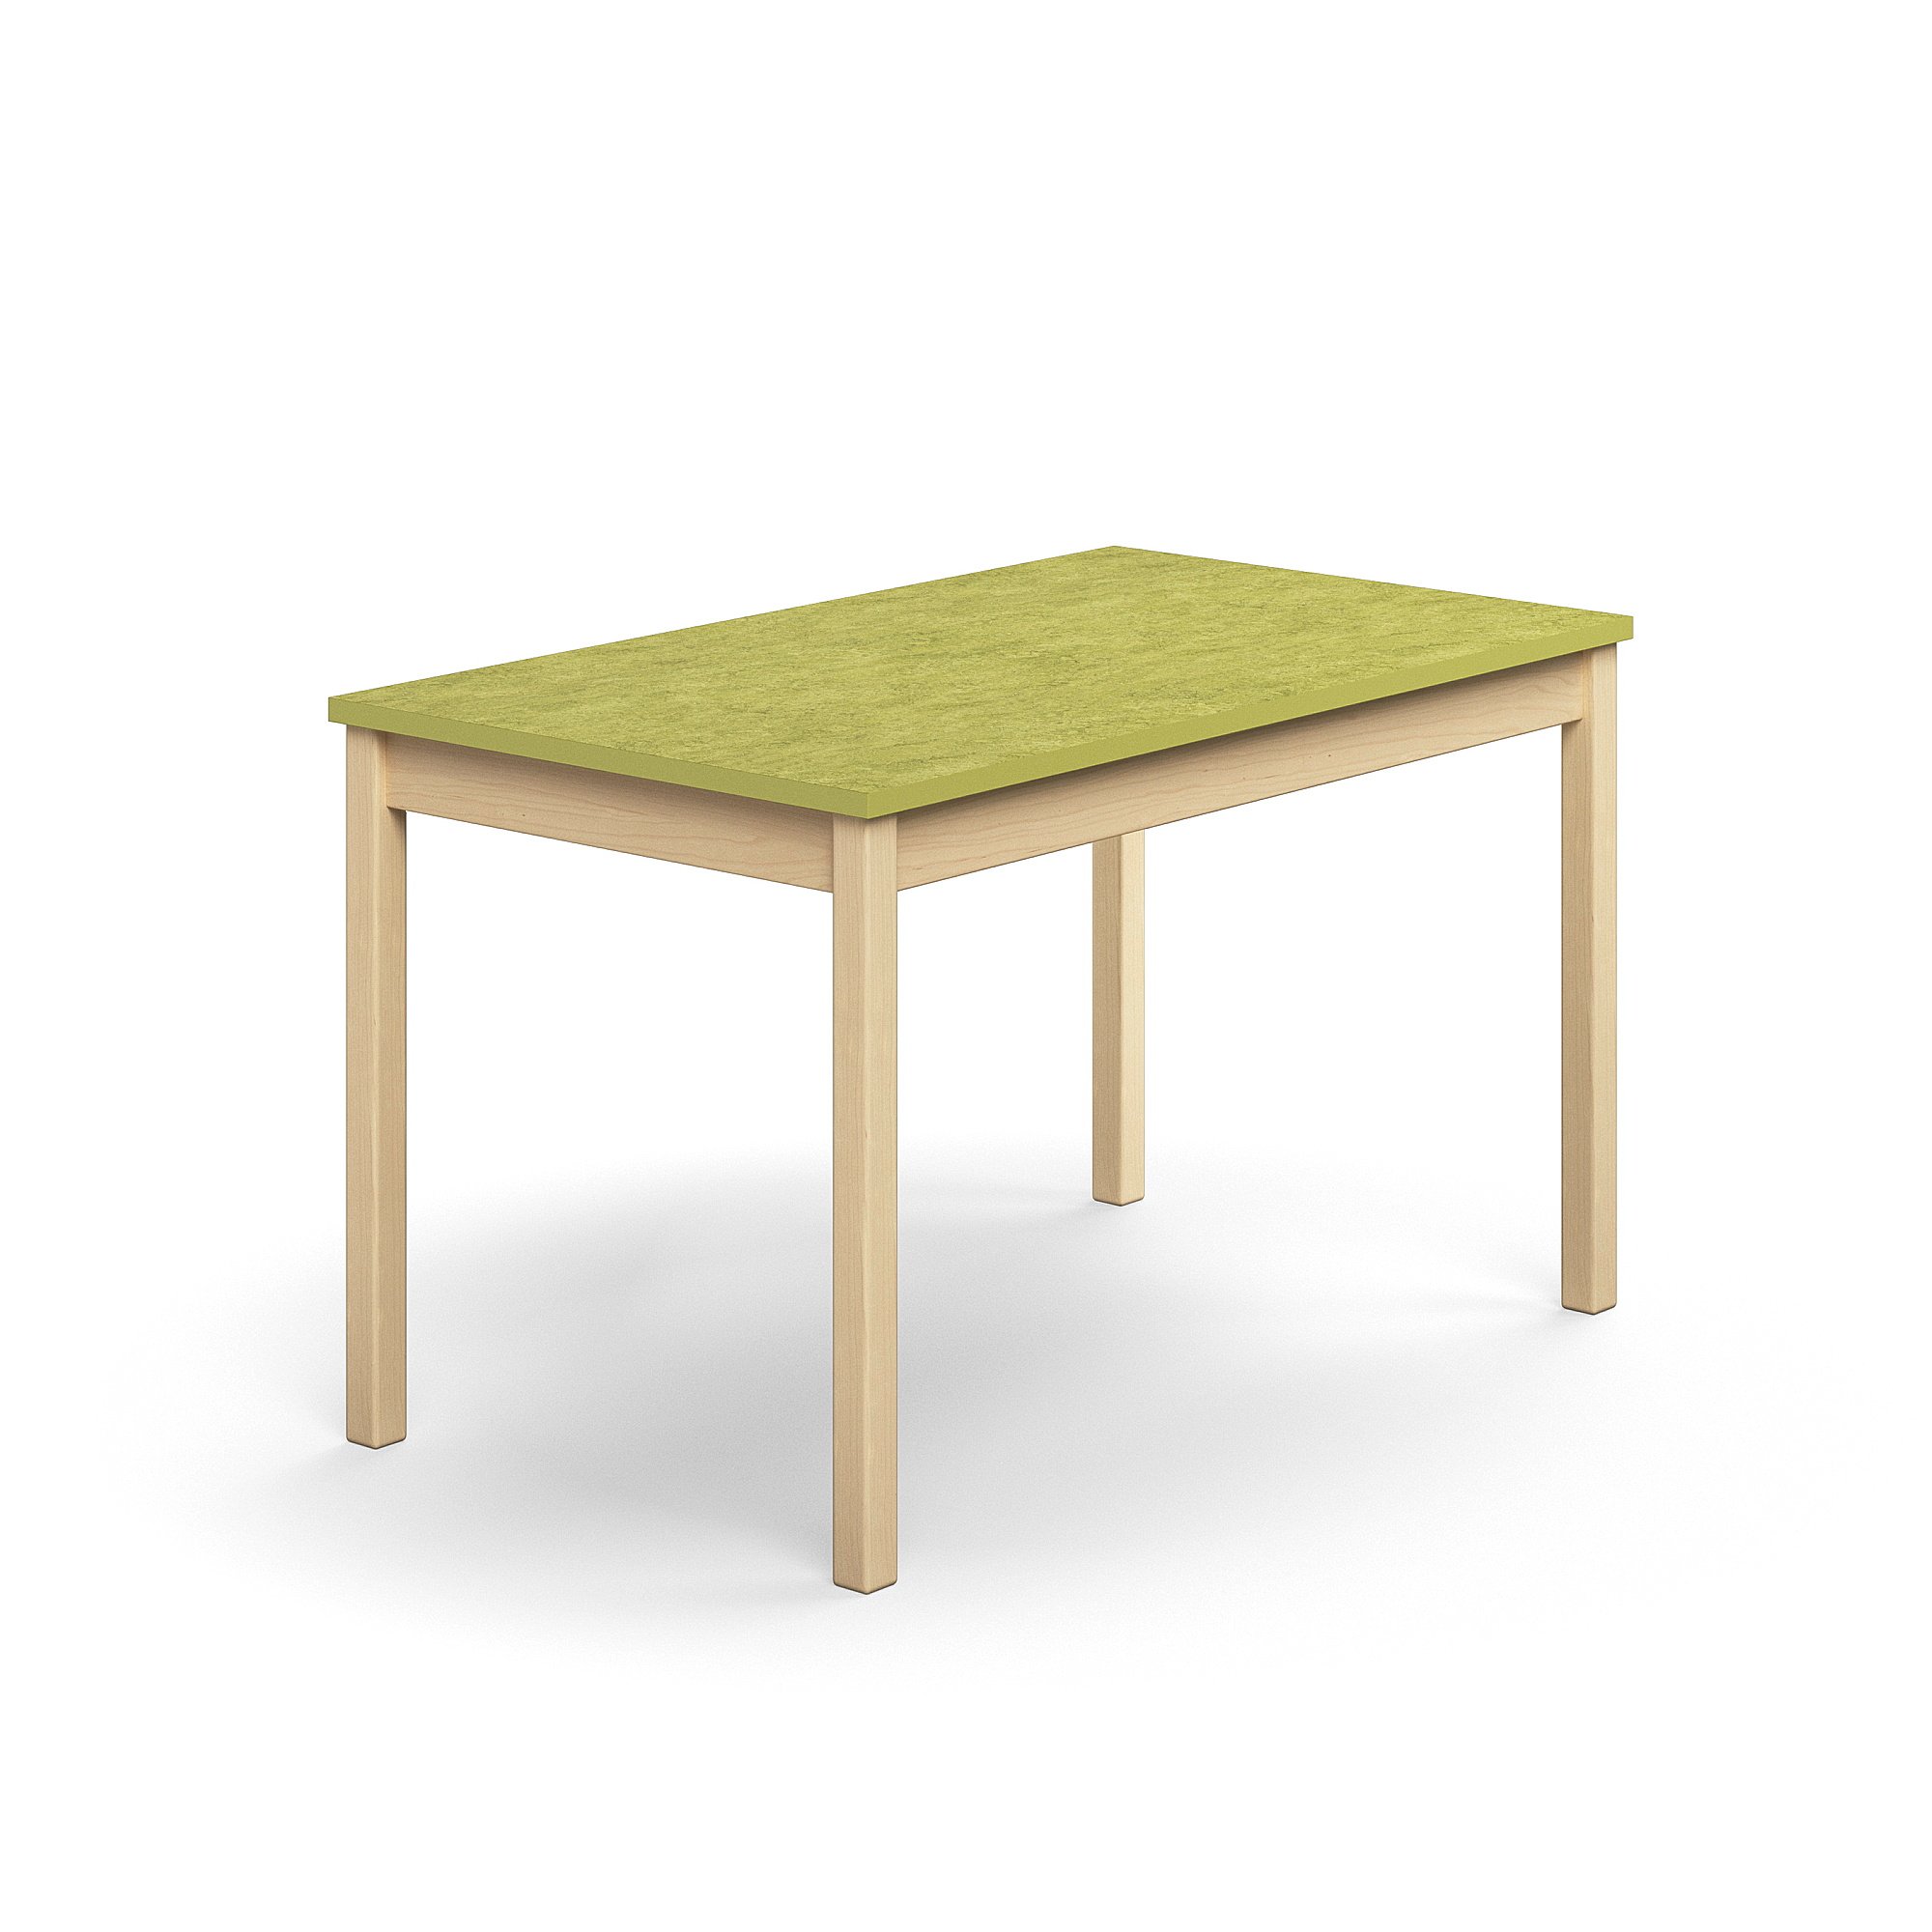 Stůl DECIBEL, 1200x700x720 mm, akustické linoleum, bříza/limetkově zelená